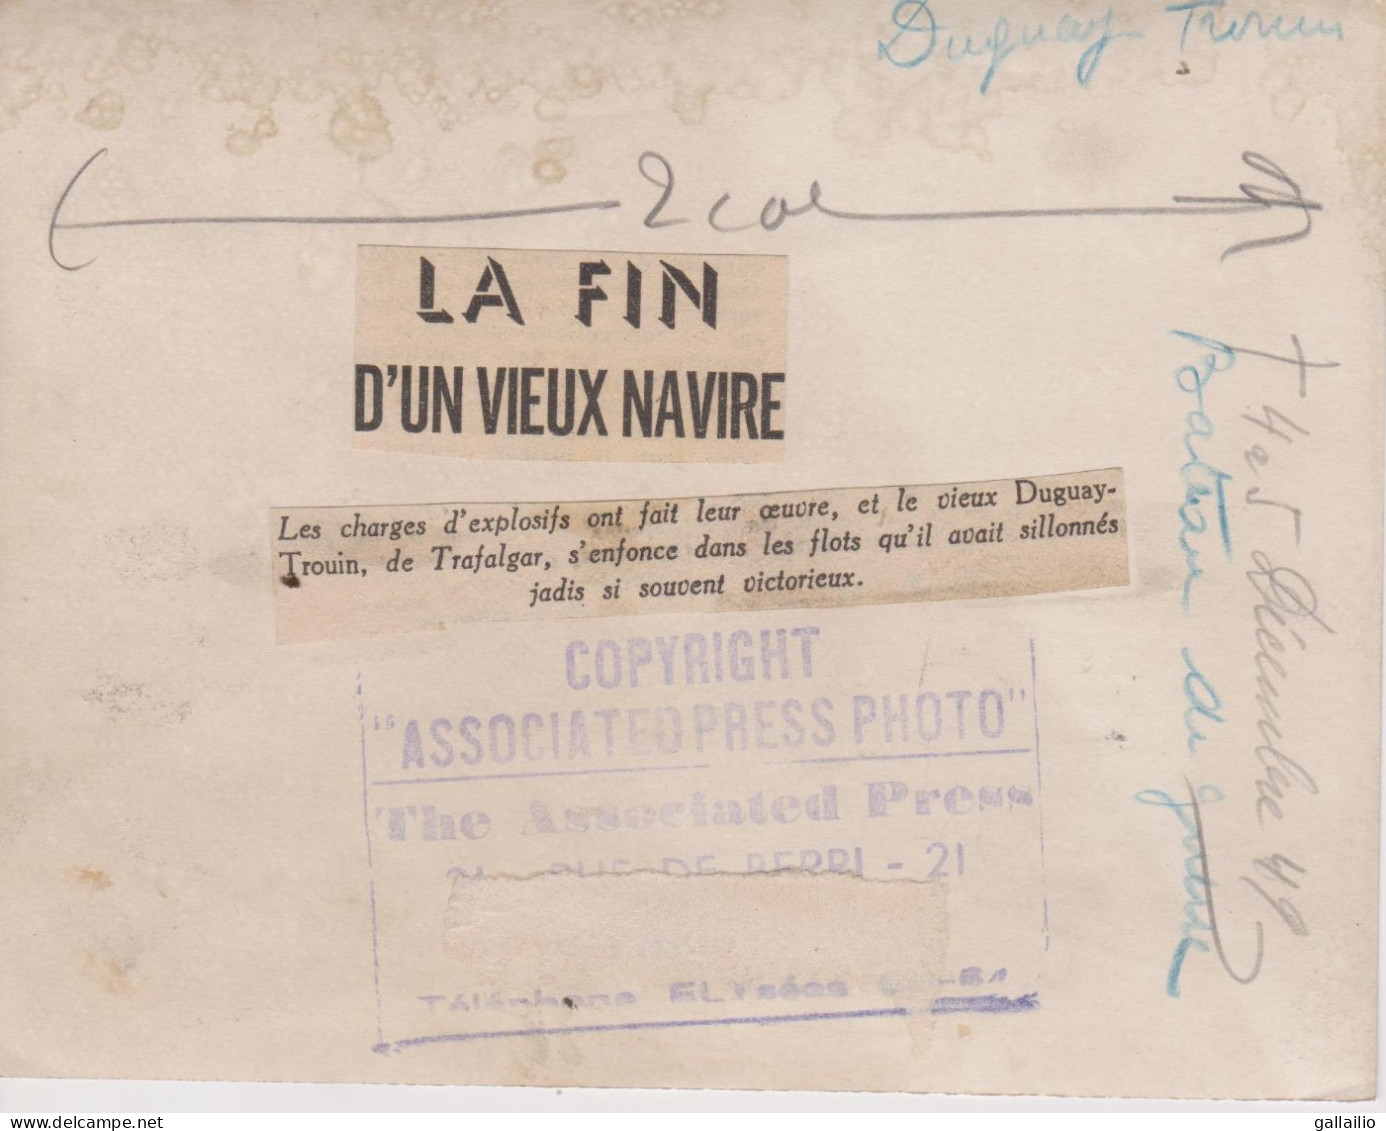 PHOTO PRESSE LE DUGUAI TROUIN COULE LA FIN D'UN VIEUX NAVIRE DECEMBRE 1949 FORMAT 16 X 13  CMS - Bateaux